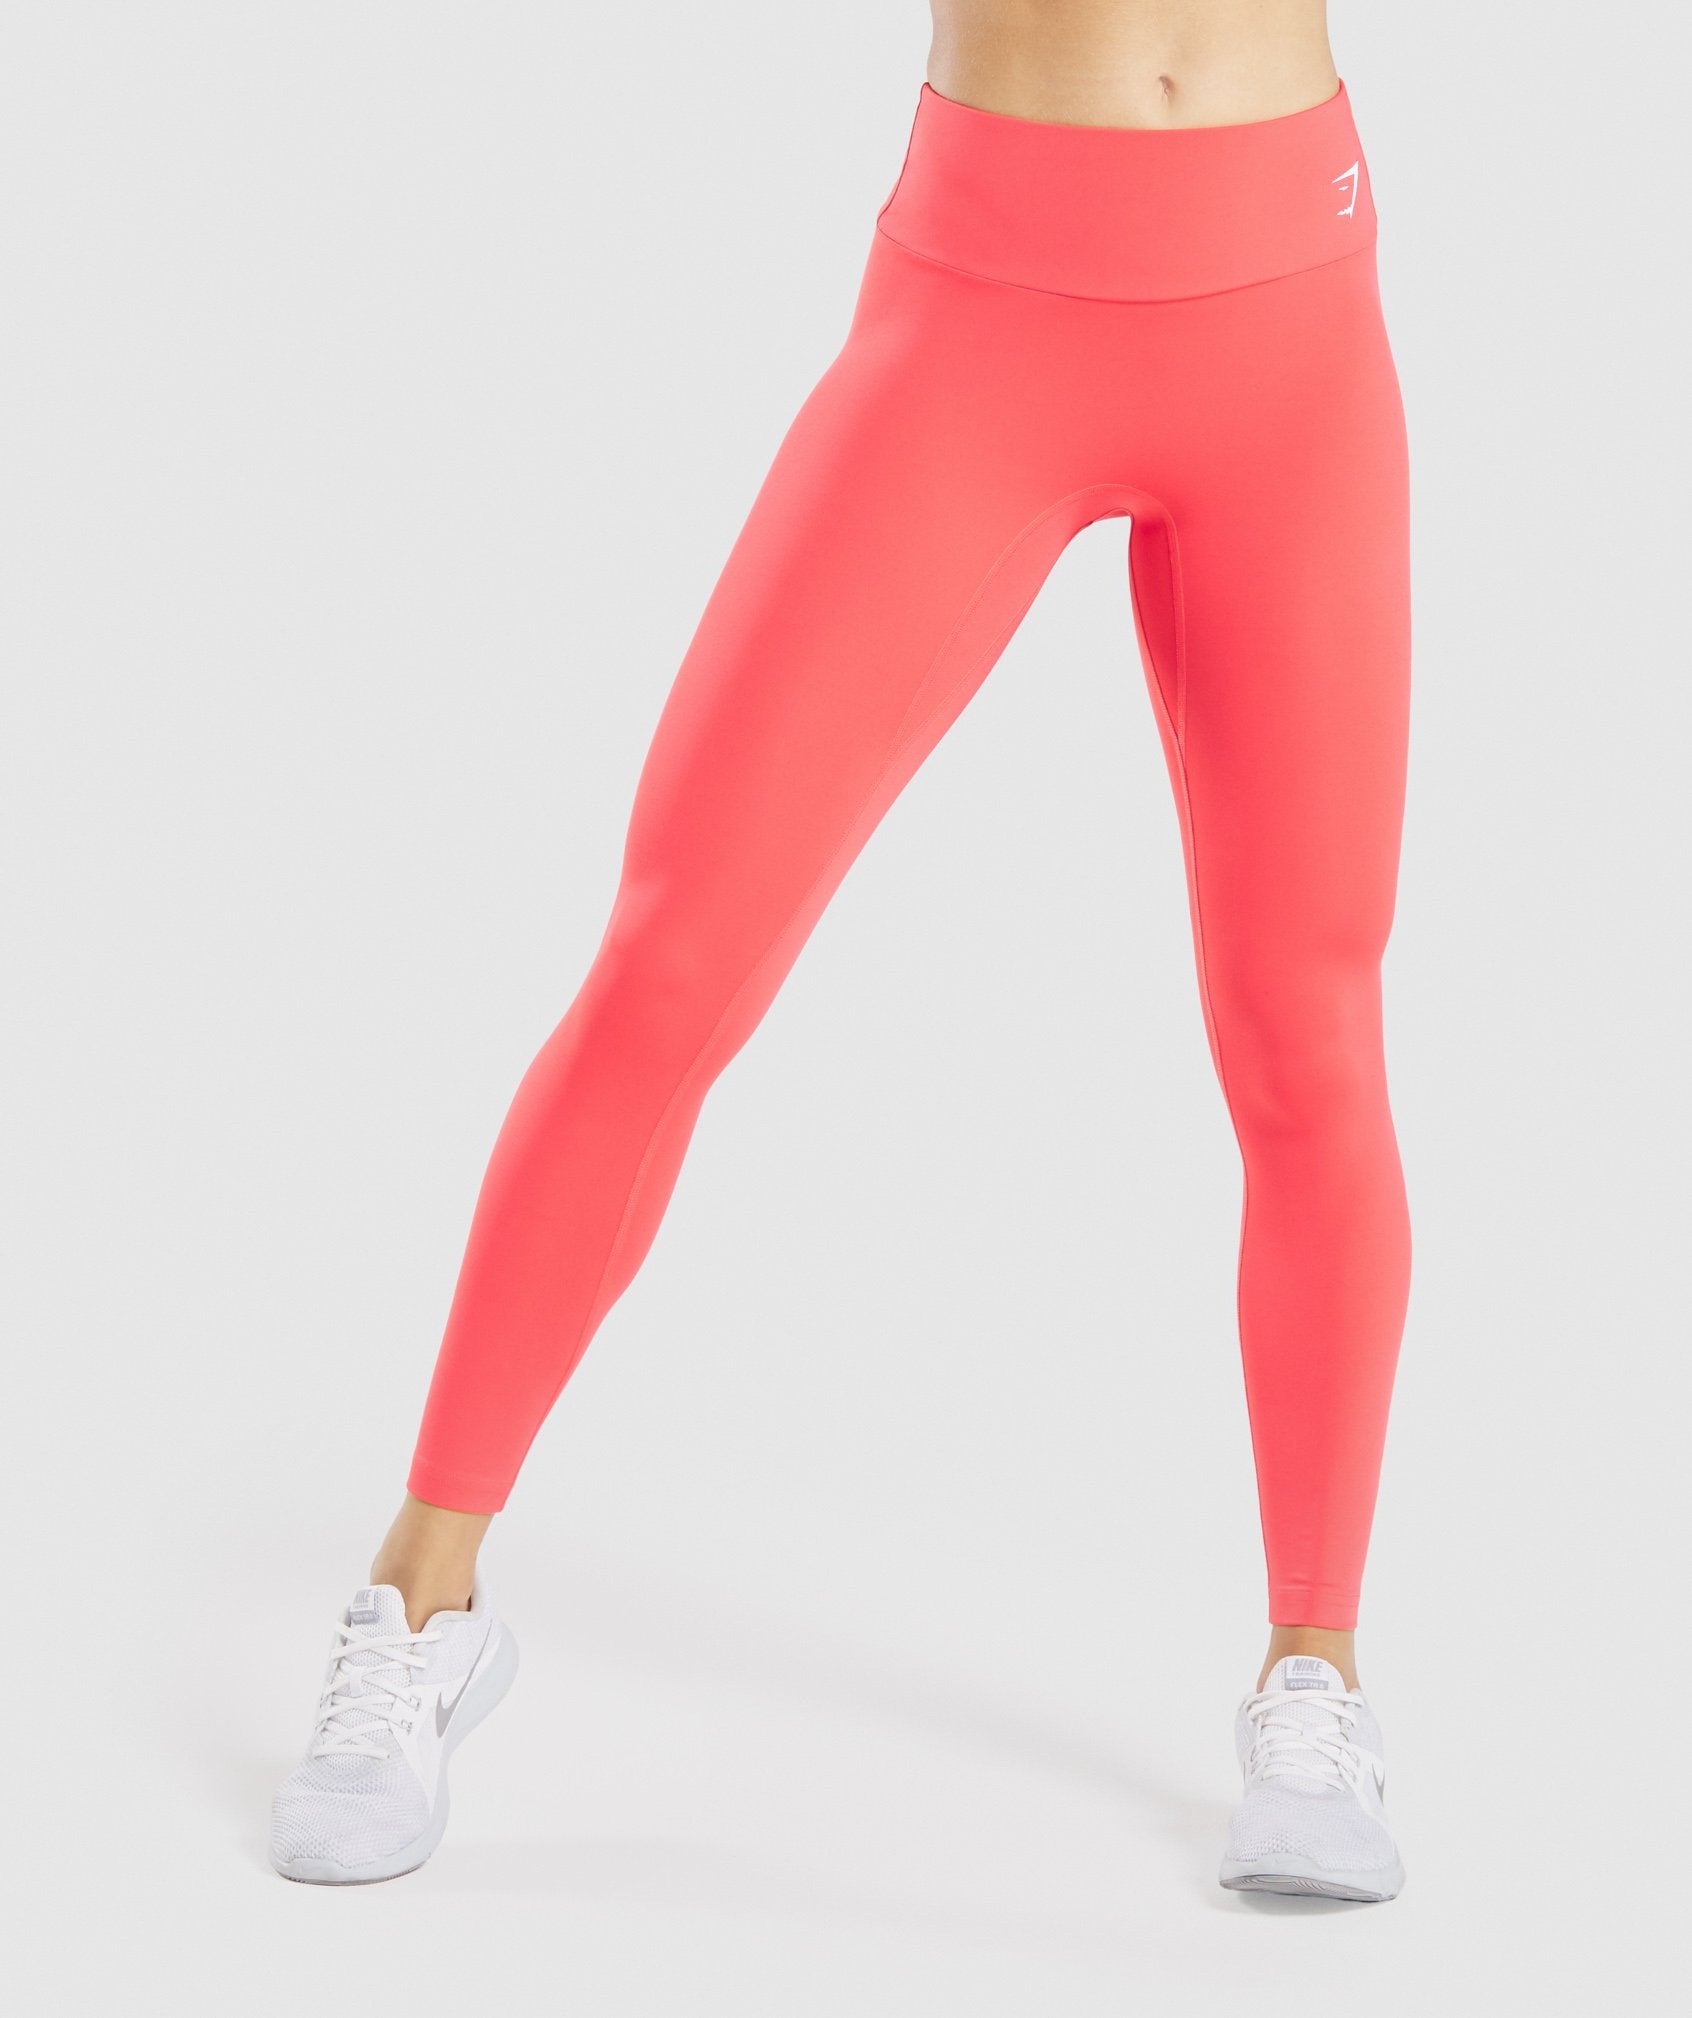 Gymshark seamless leggings beet red, Women's Fashion, Activewear